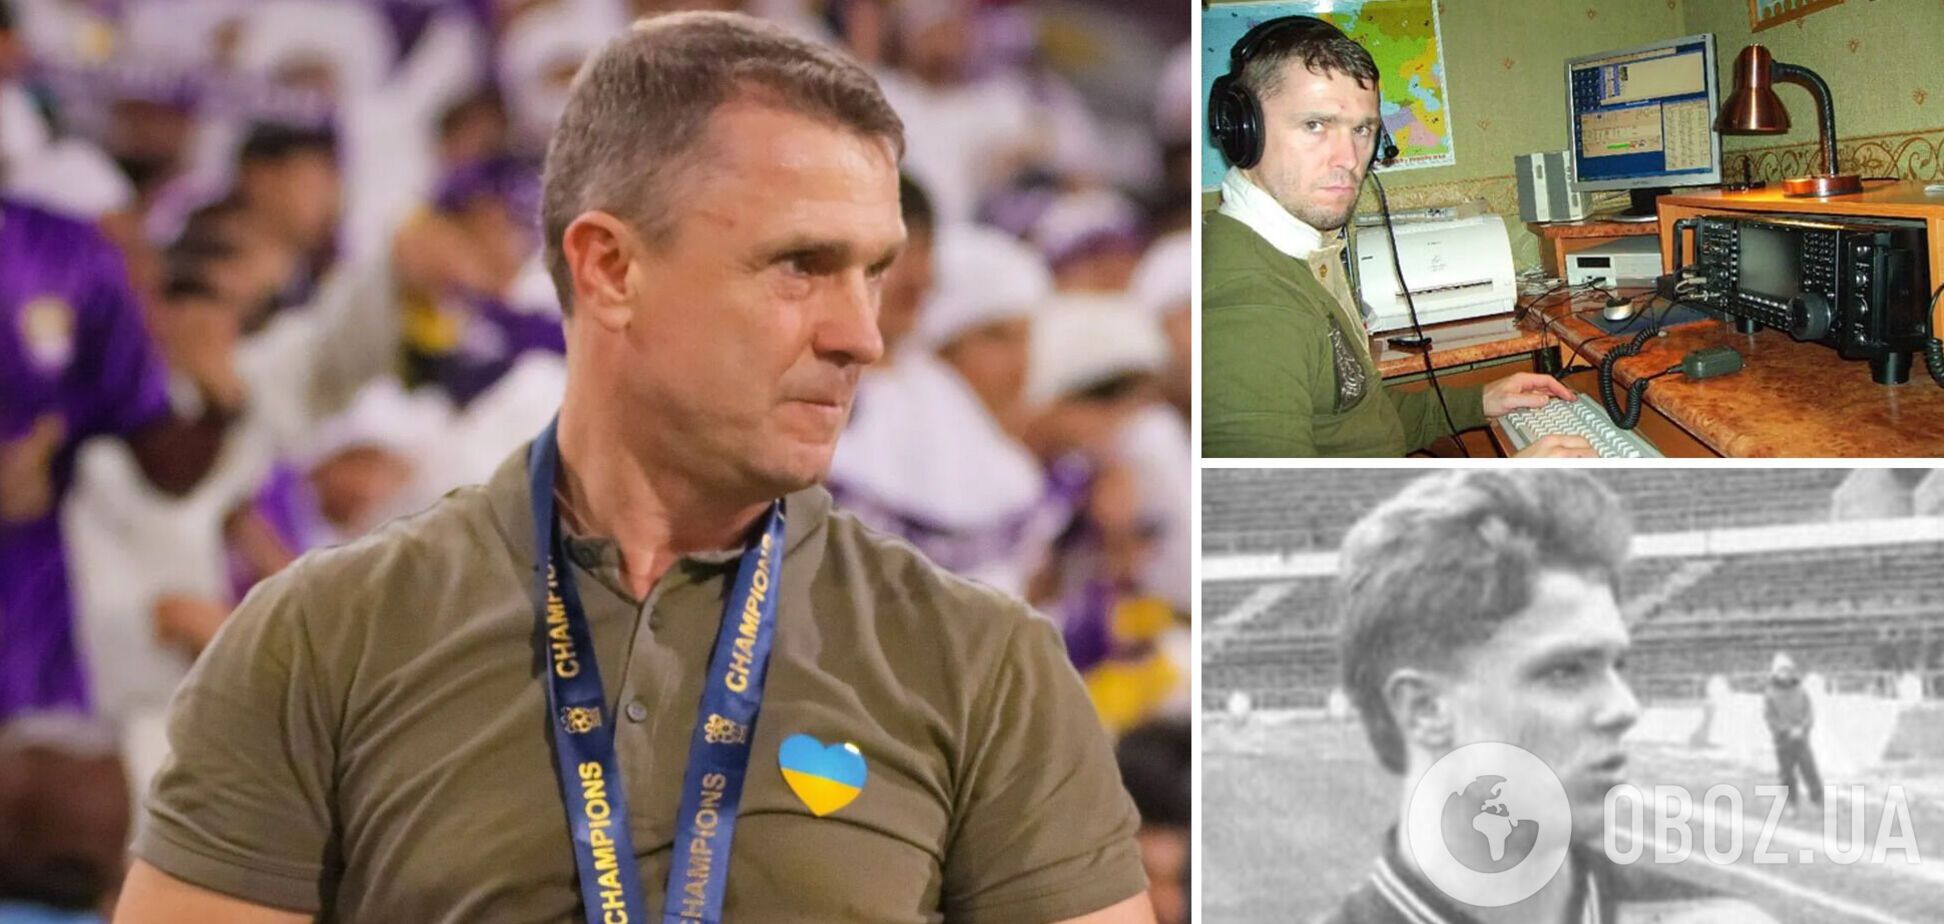 Как выглядел в детстве будущий тренер сборной Украины Ребров: радиочемпион и не состоявшийся шофёр